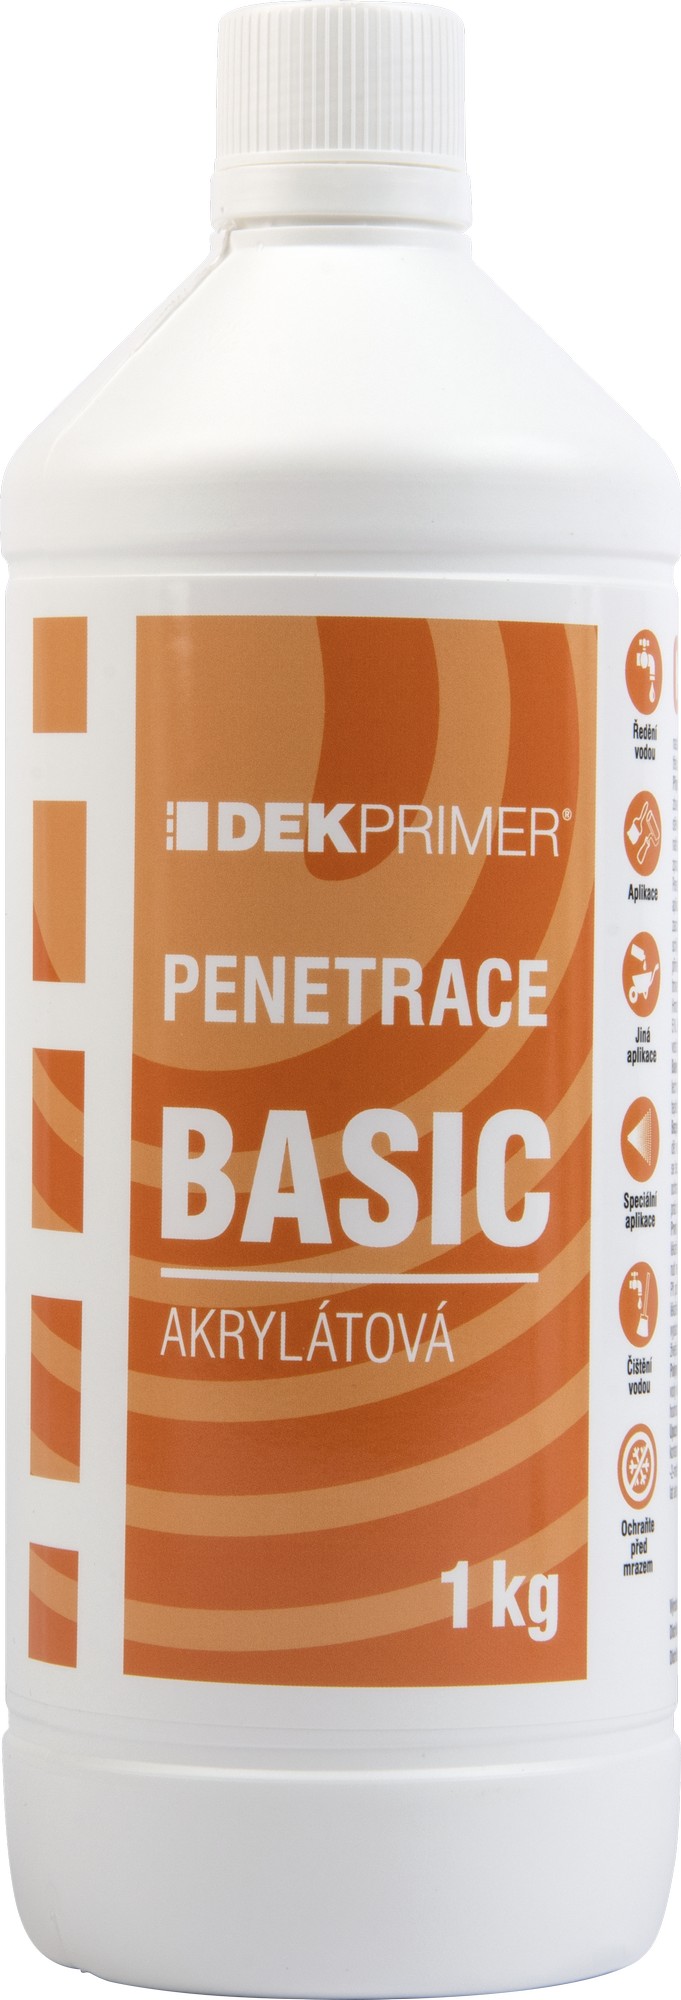 Penetrace akrylátová DEKPRIMER BASIC , 1 kg/bal.